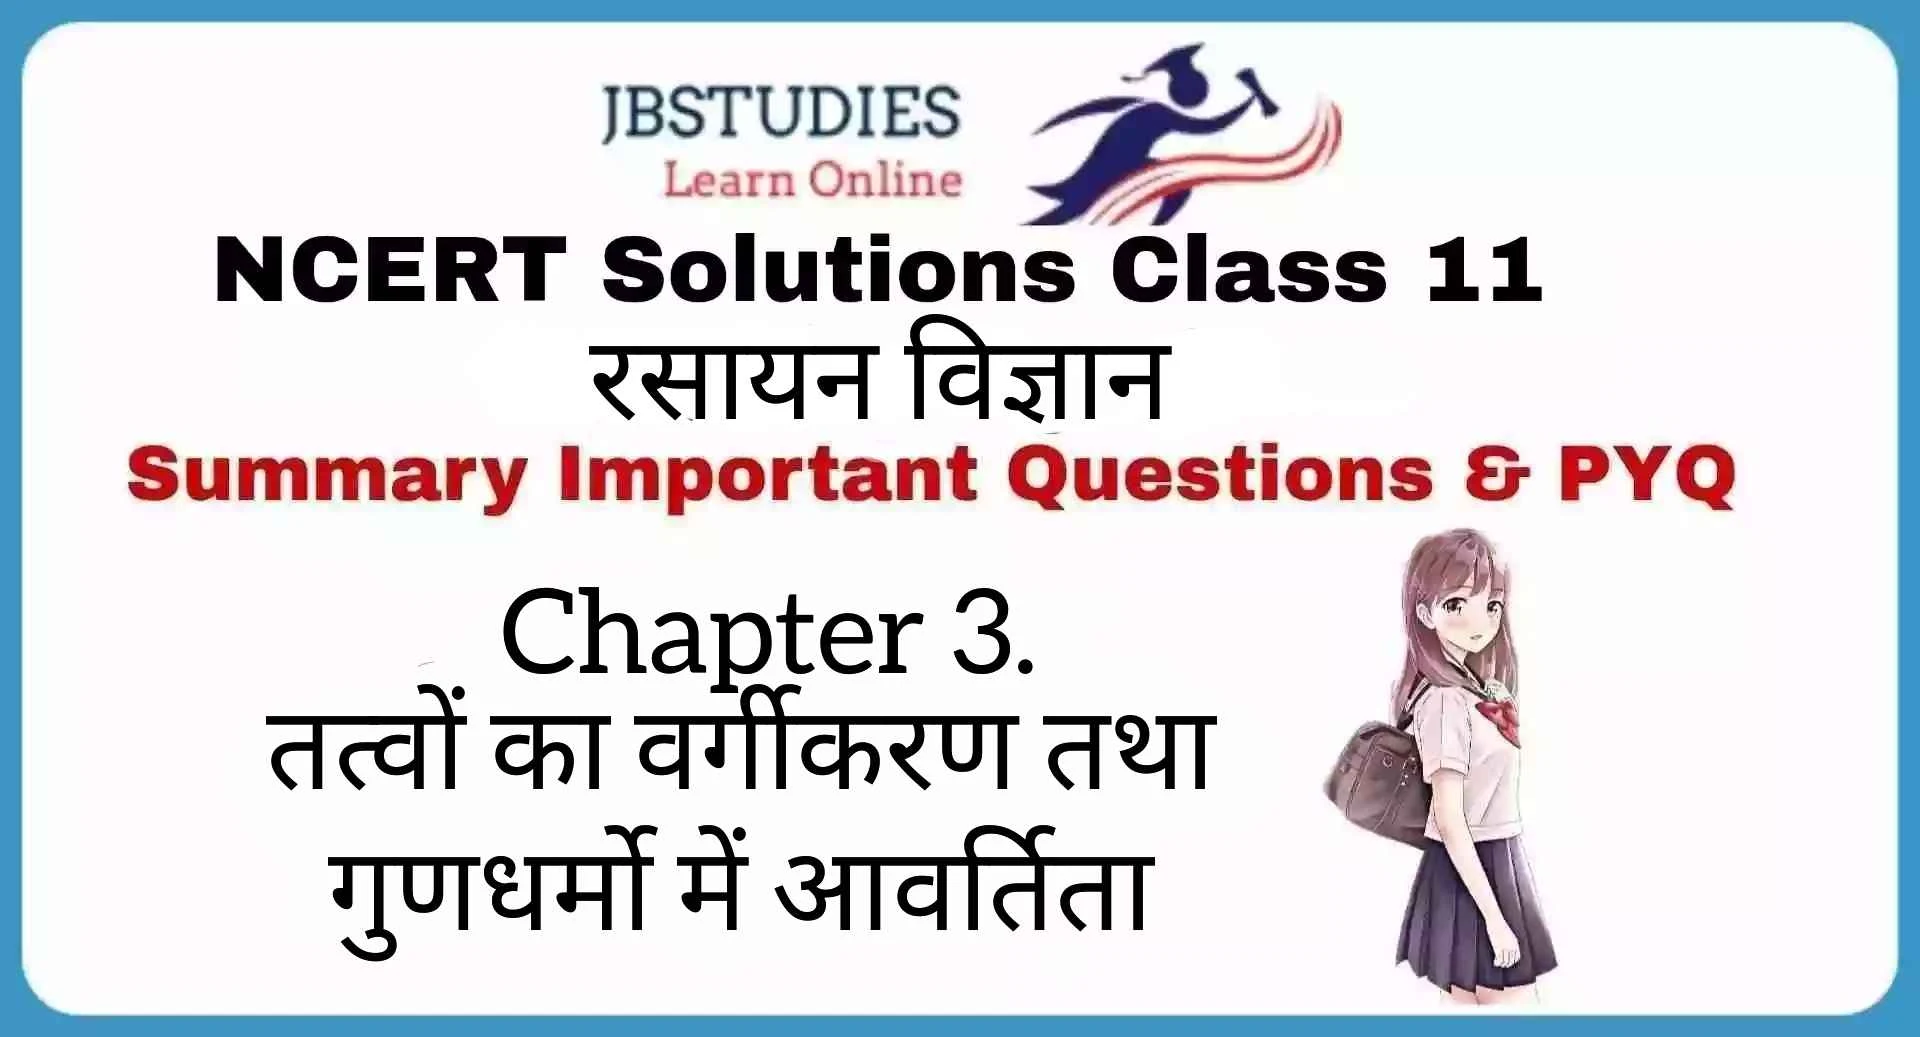 Solutions Class 11 रसायन विज्ञान Chapter-3 (तत्त्वों का वर्गीकरण एवं गुणधर्मों में आवर्तिता)